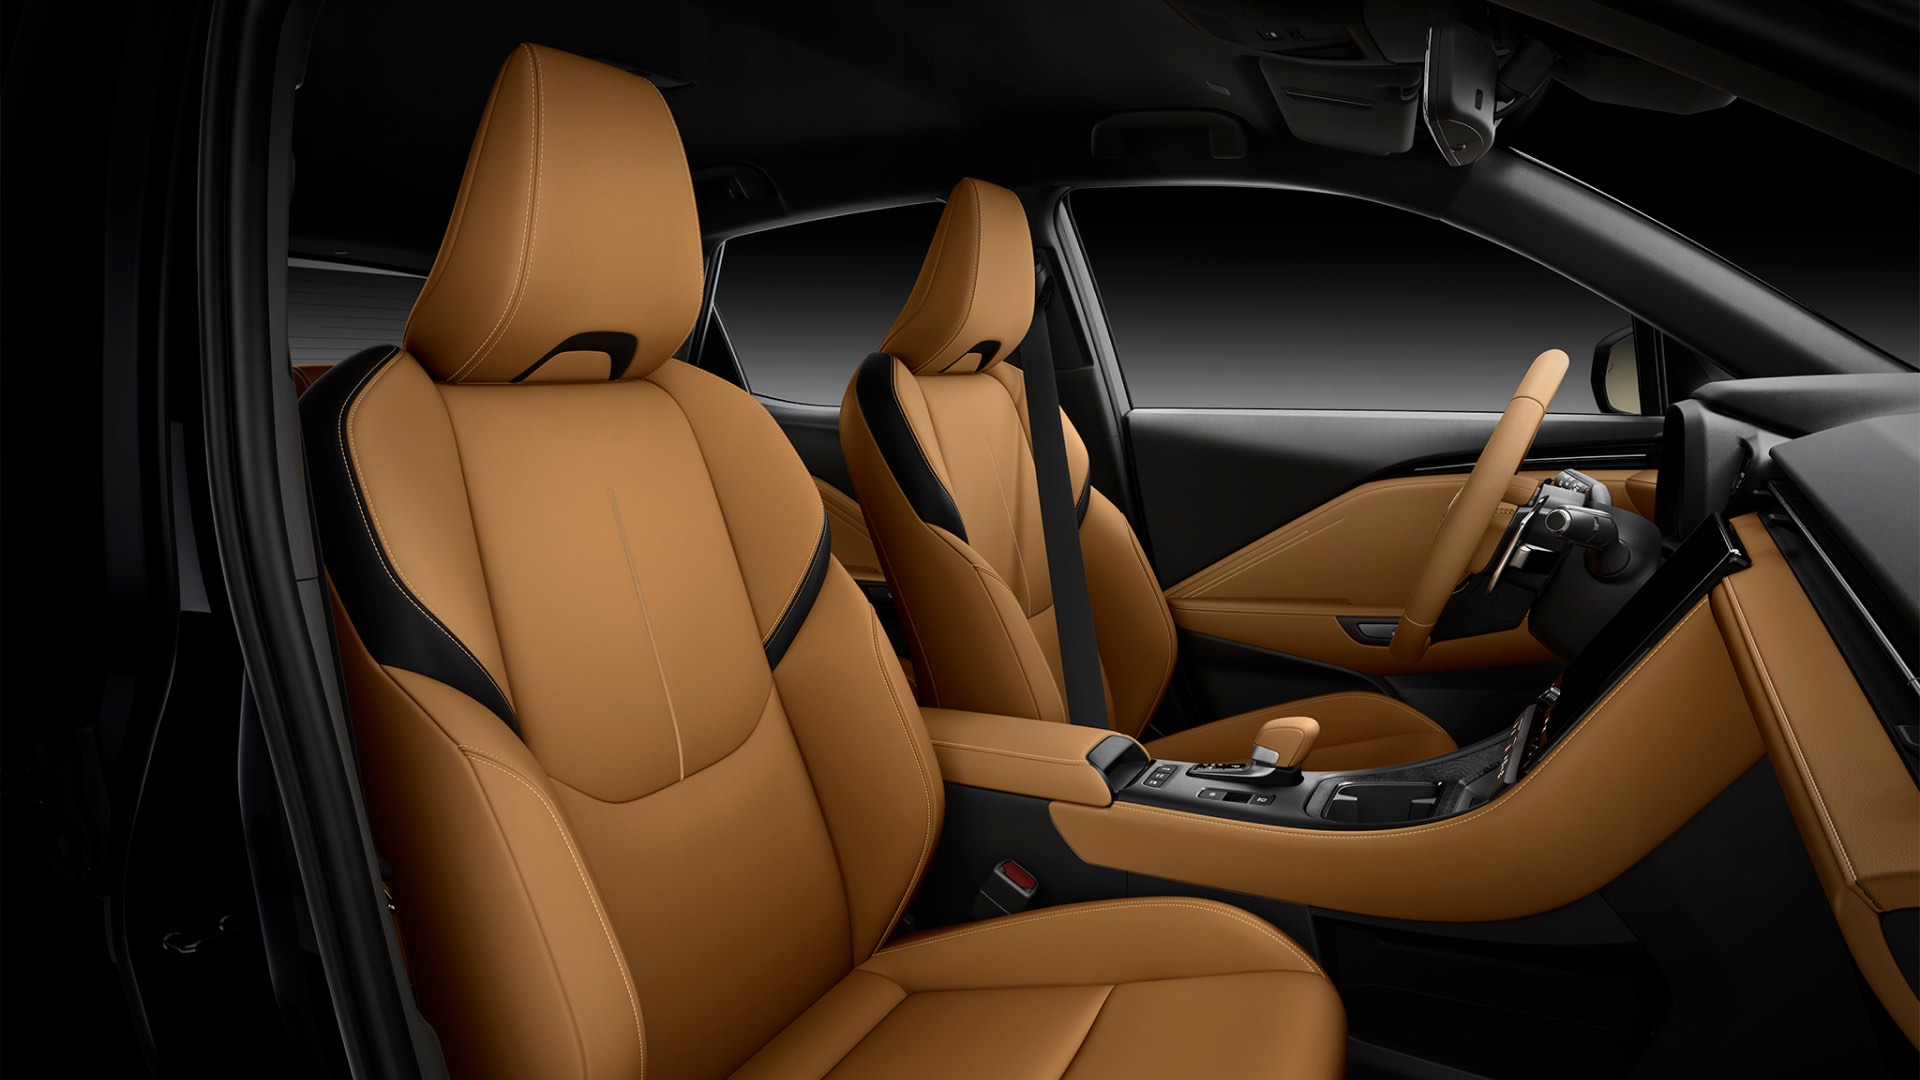 Interior seats of the Lexus LBX